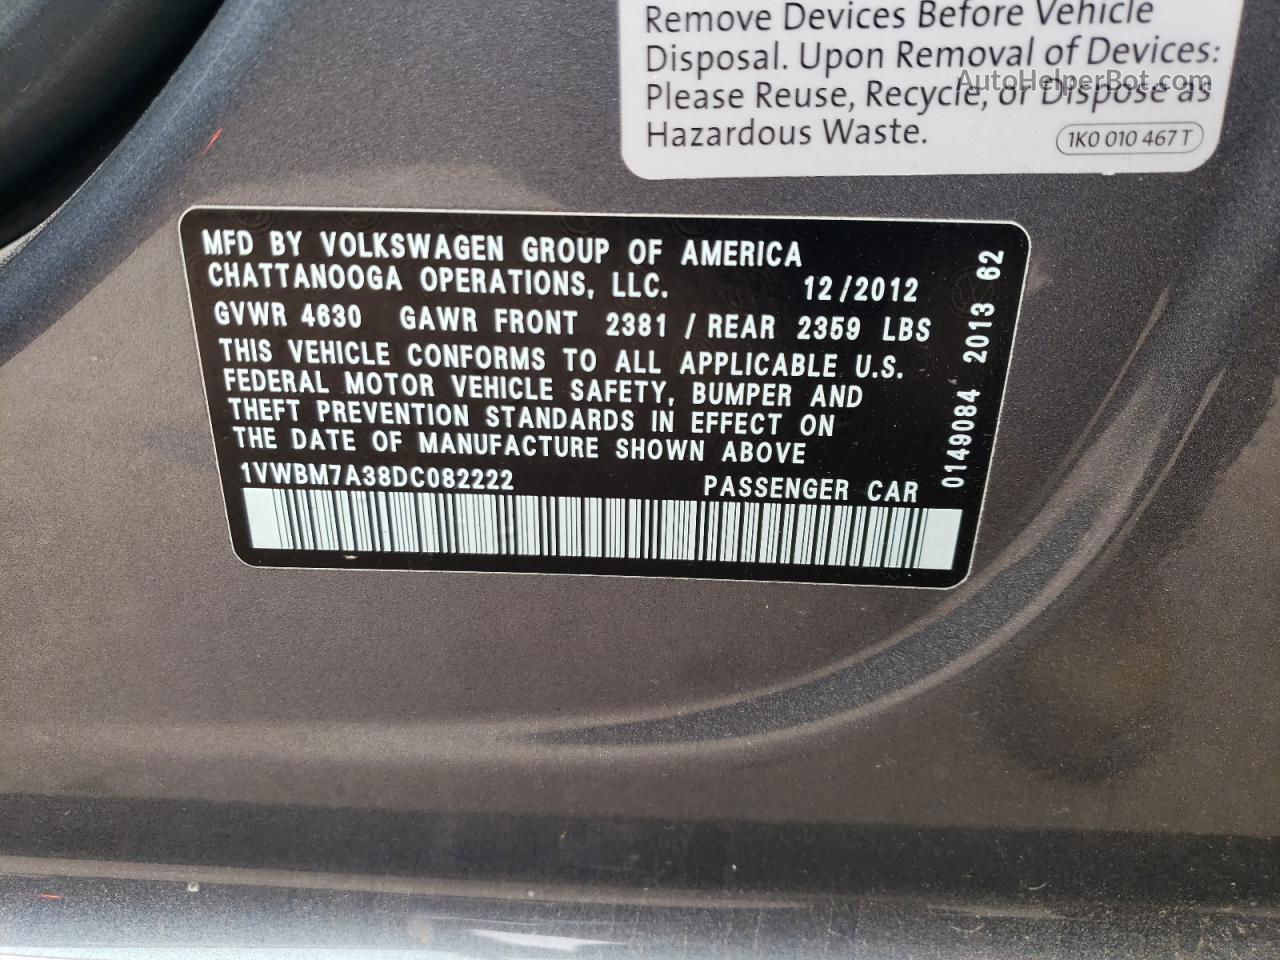 2013 Volkswagen Passat Se Gray vin: 1VWBM7A38DC082222